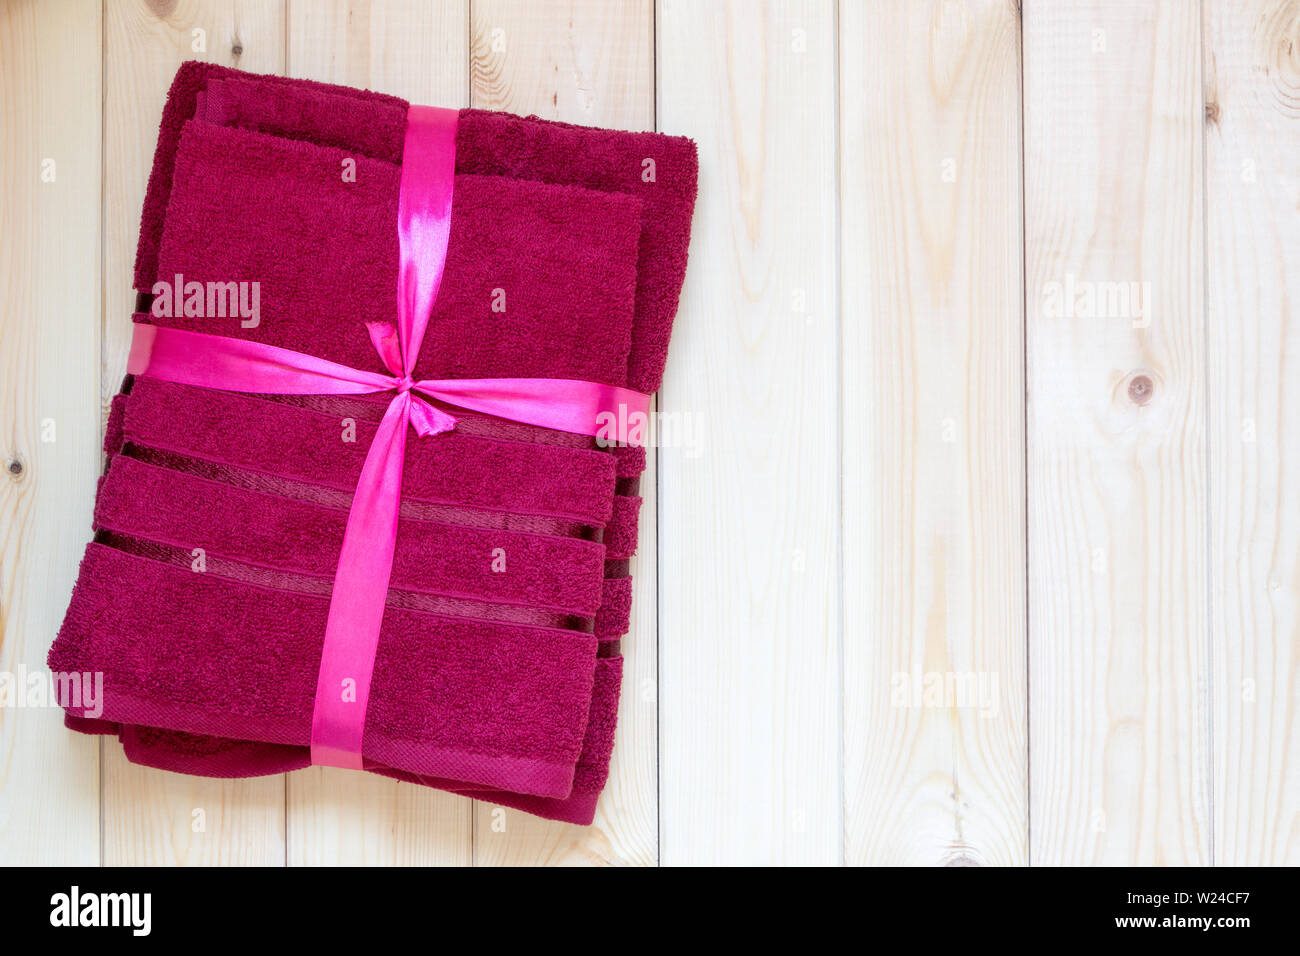 Nouvelles serviettes éponge rouge attaché avec un ruban rose, s'est posé sur une table en bois clair, comme un cadeau. Copier l'espace. Vue de dessus. Close-up. Concept de soins du corps. Banque D'Images